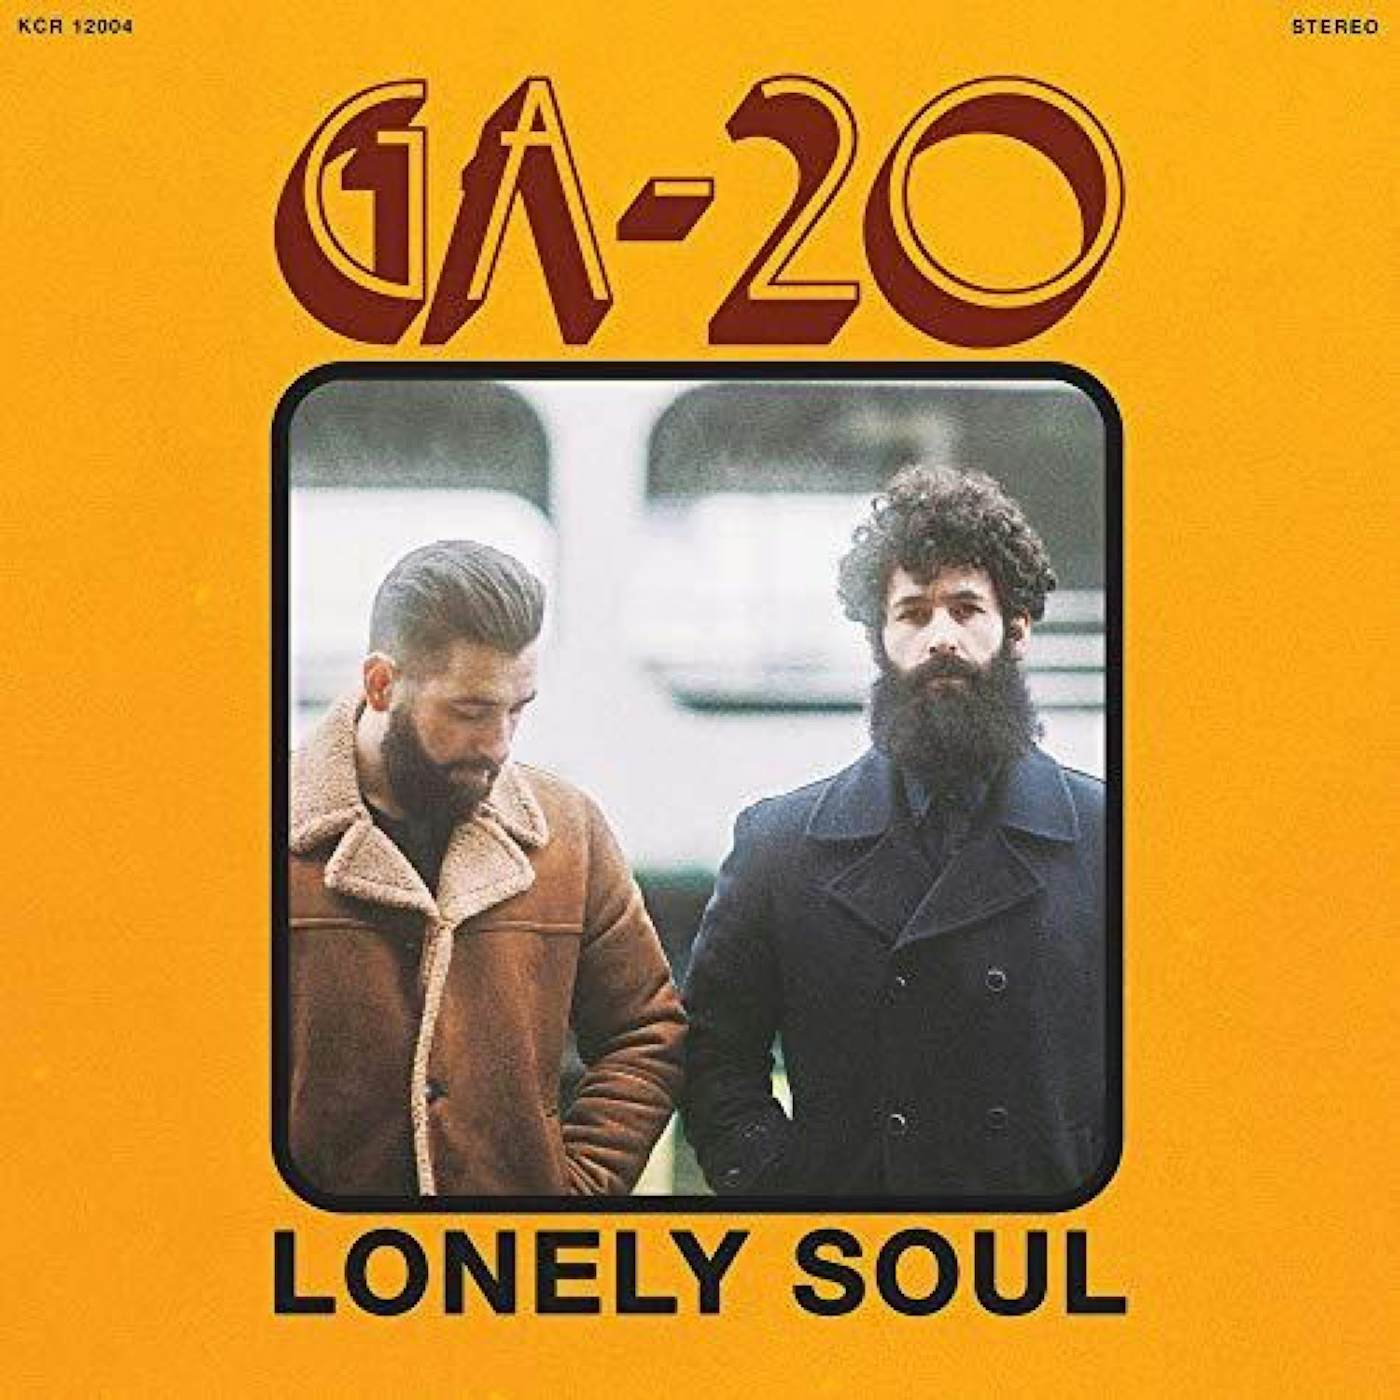 GA-20 LONELY SOUL CD